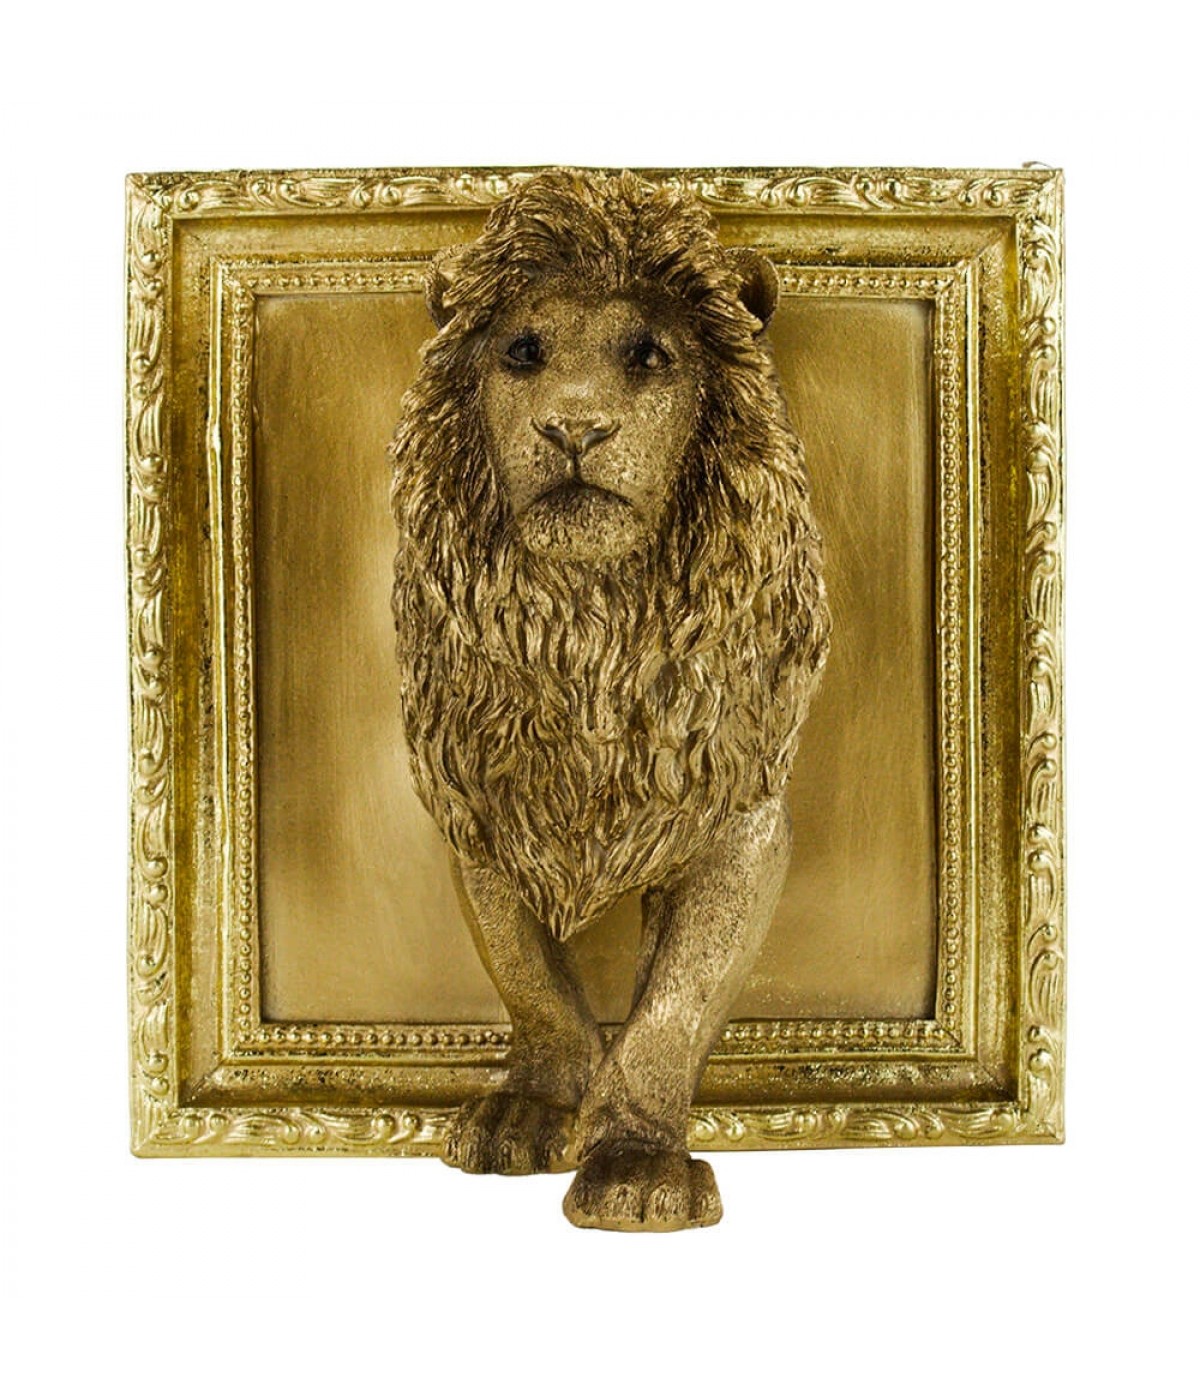 Leão Saindo Moldura Dourado 22cm - Resina Animais